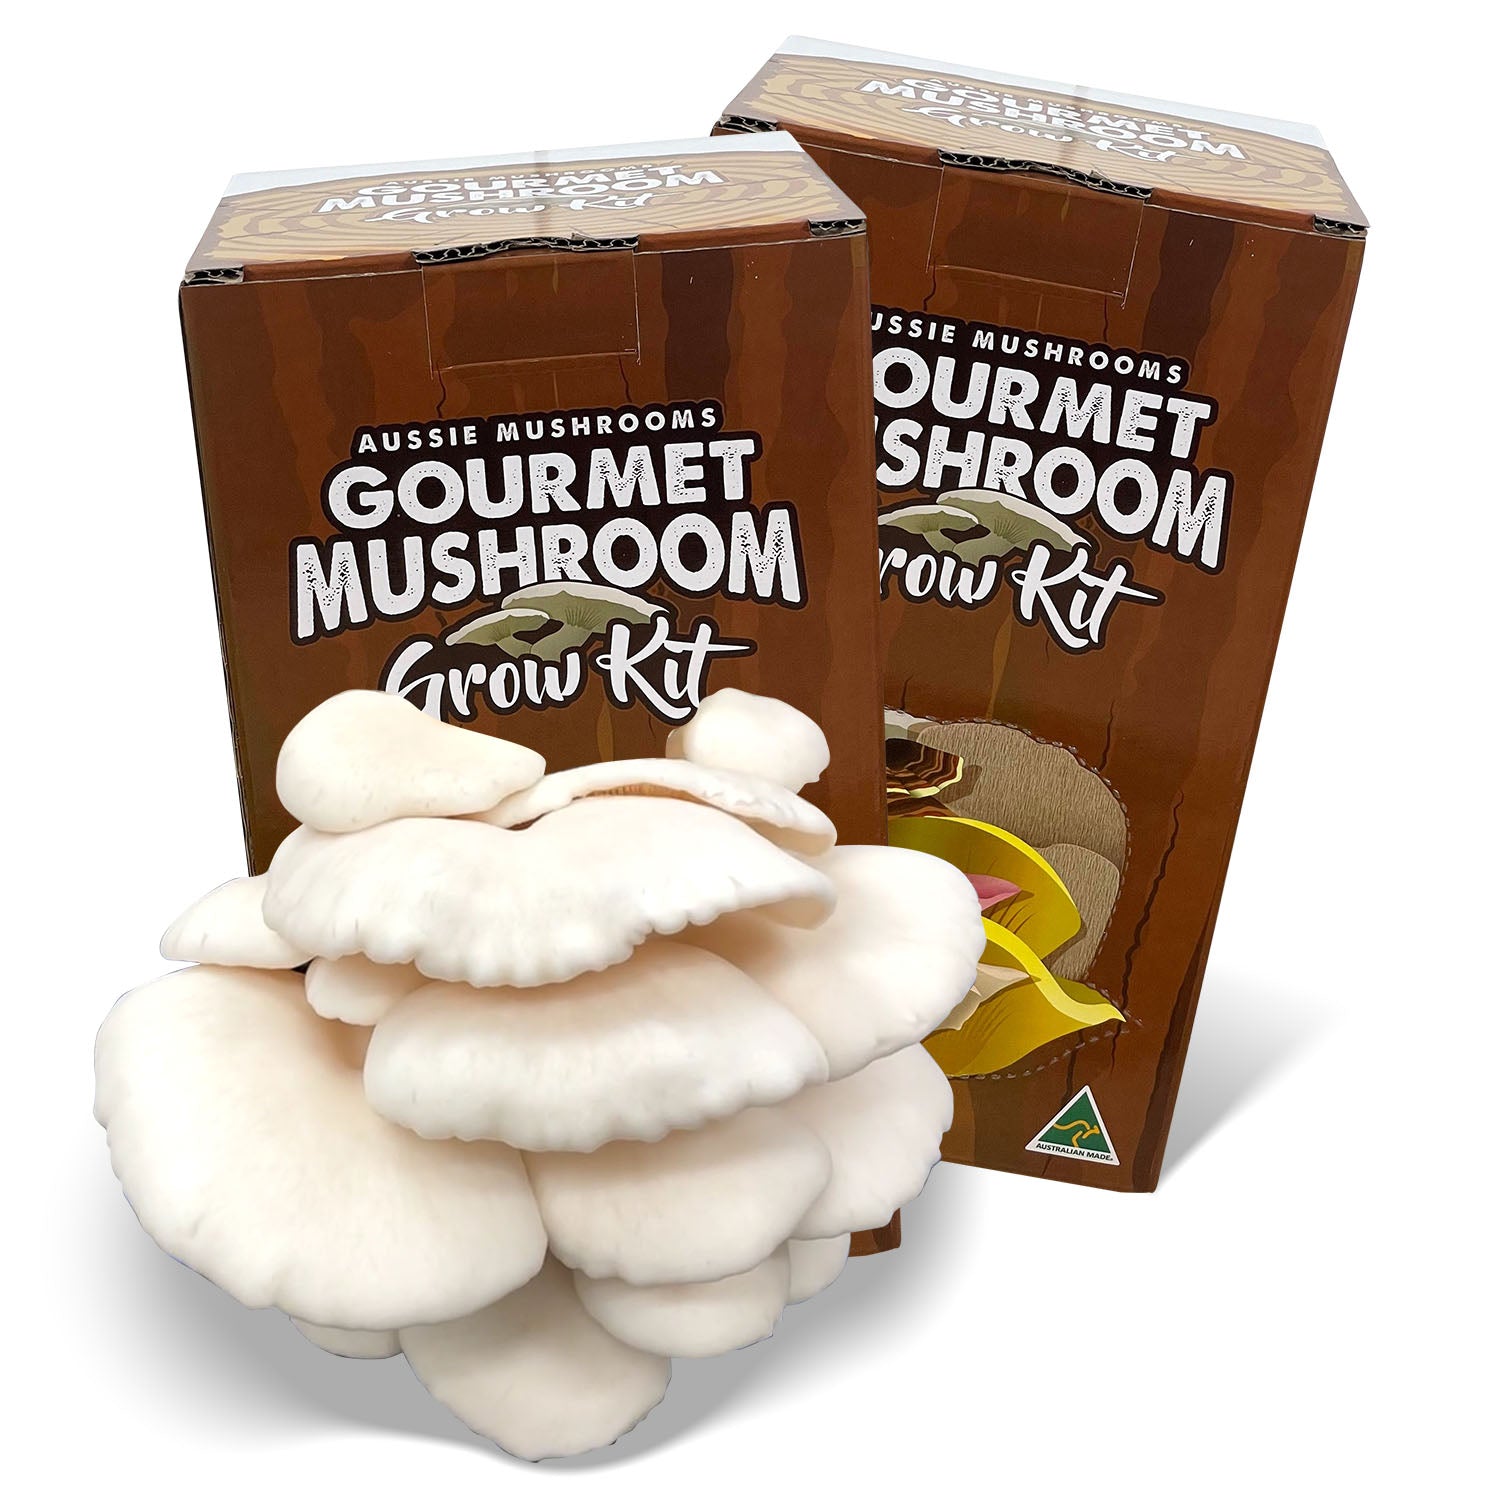 Aussie Mushroom Kits